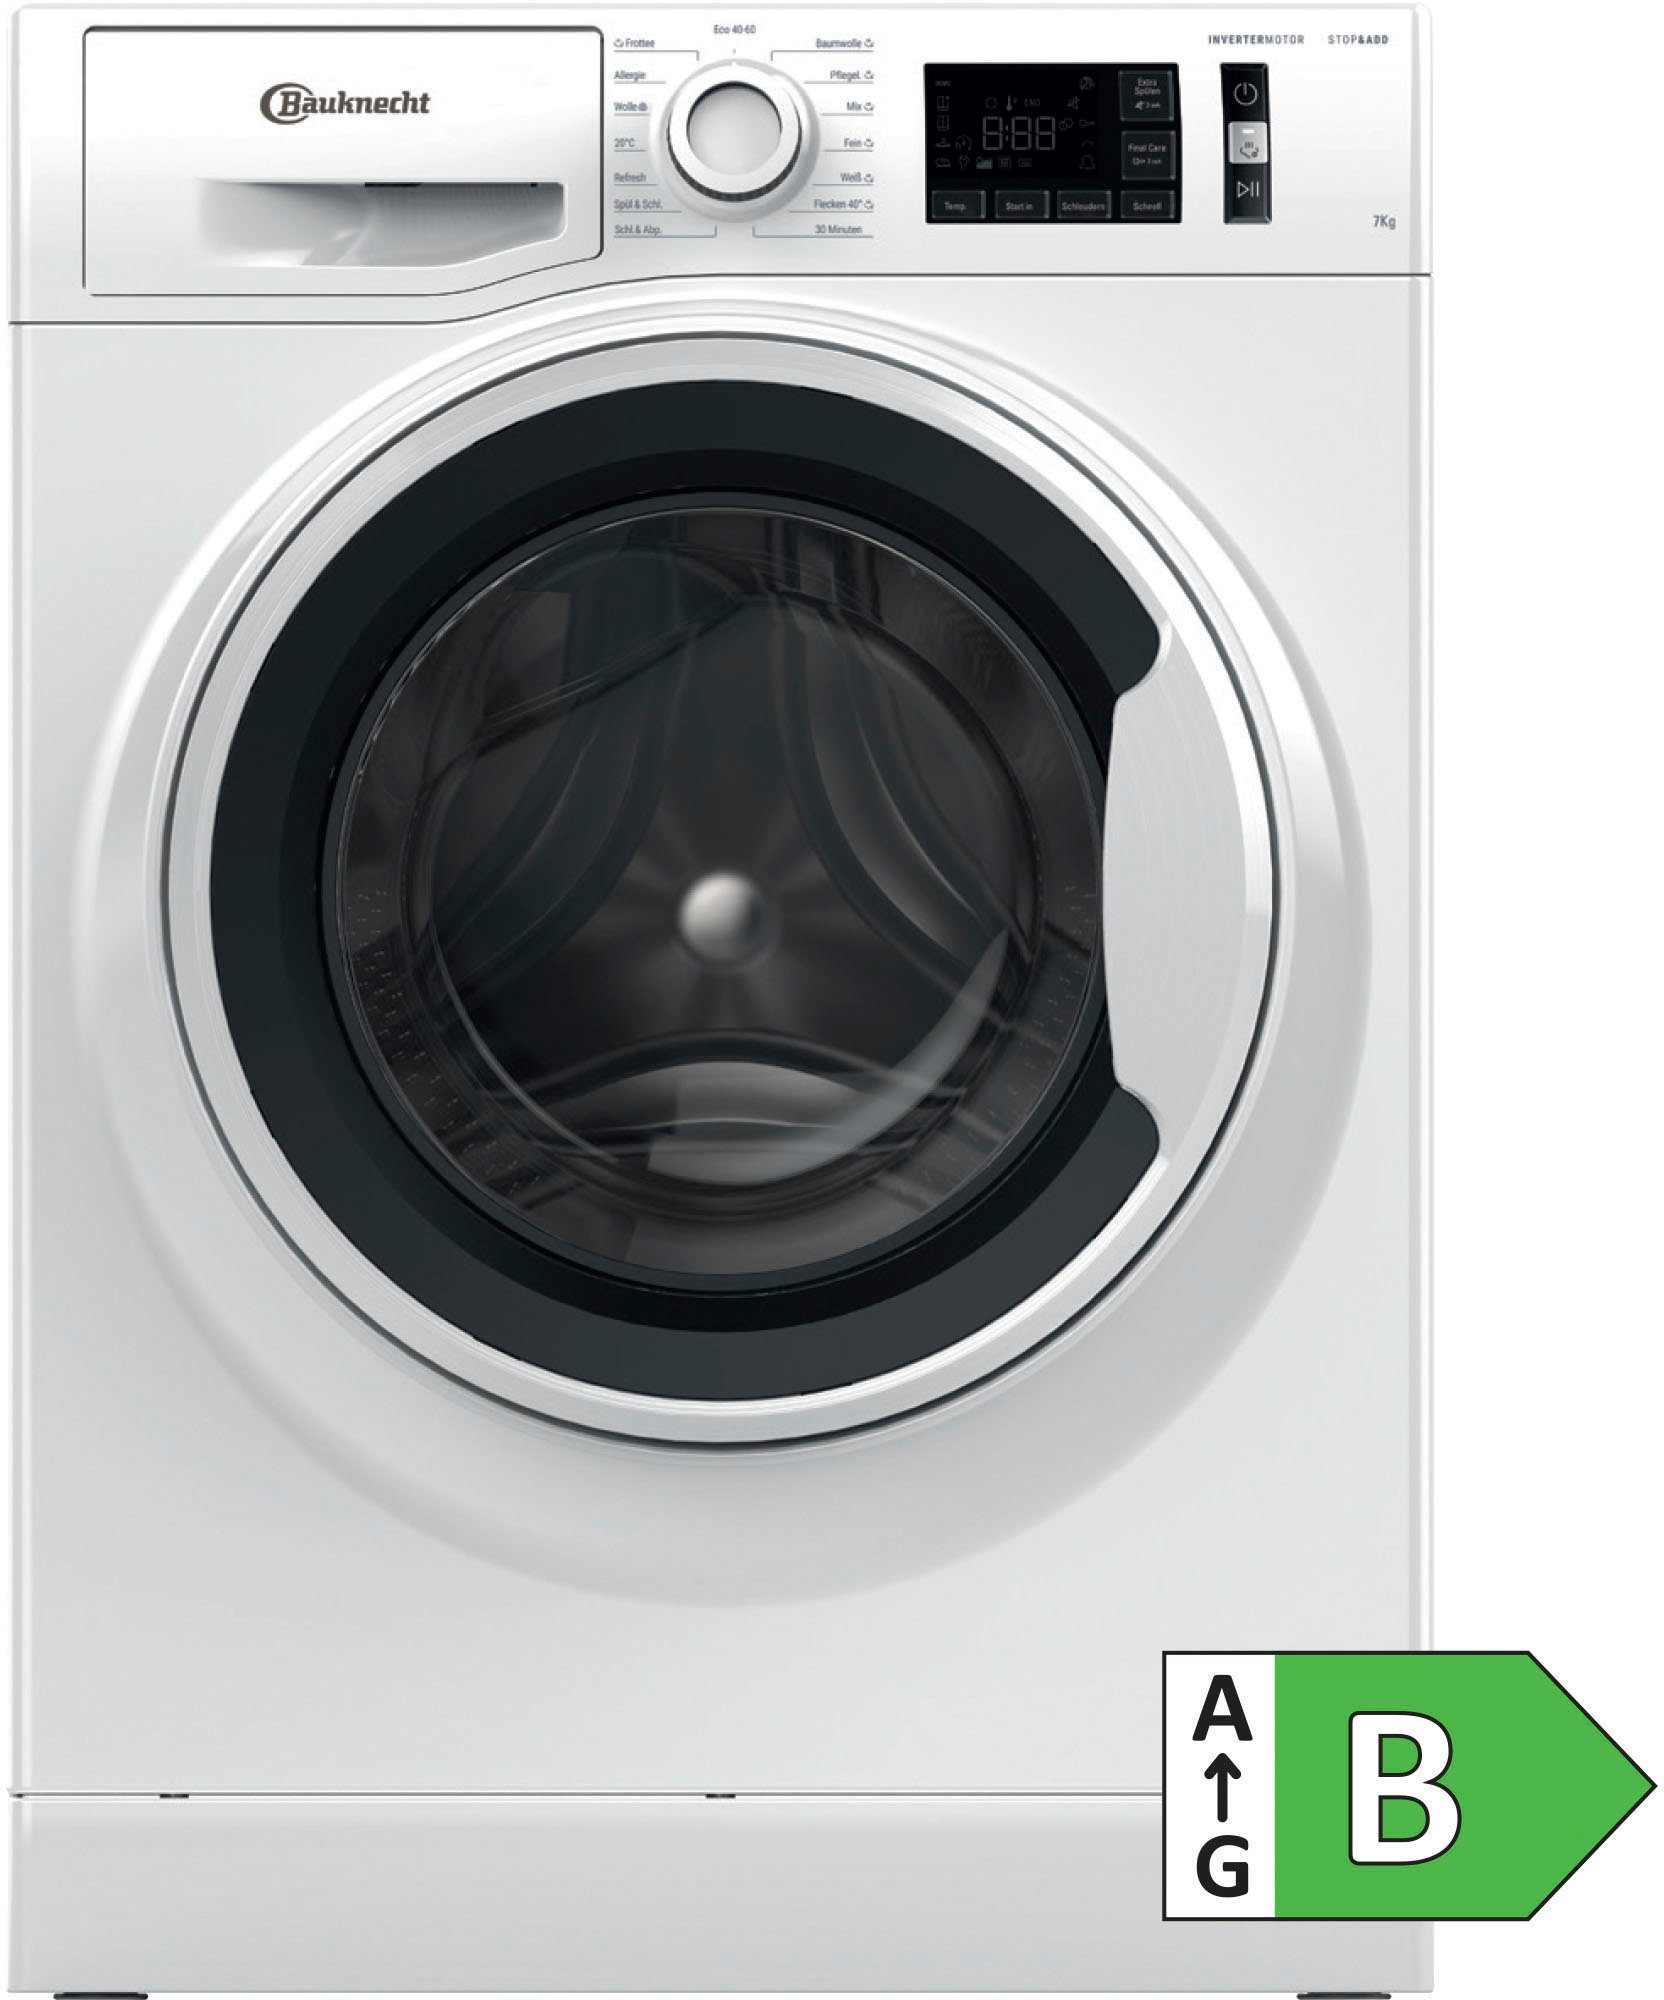 1400 BAUKNECHT Waschmaschine U/min kg, 711 Active B, 7 W